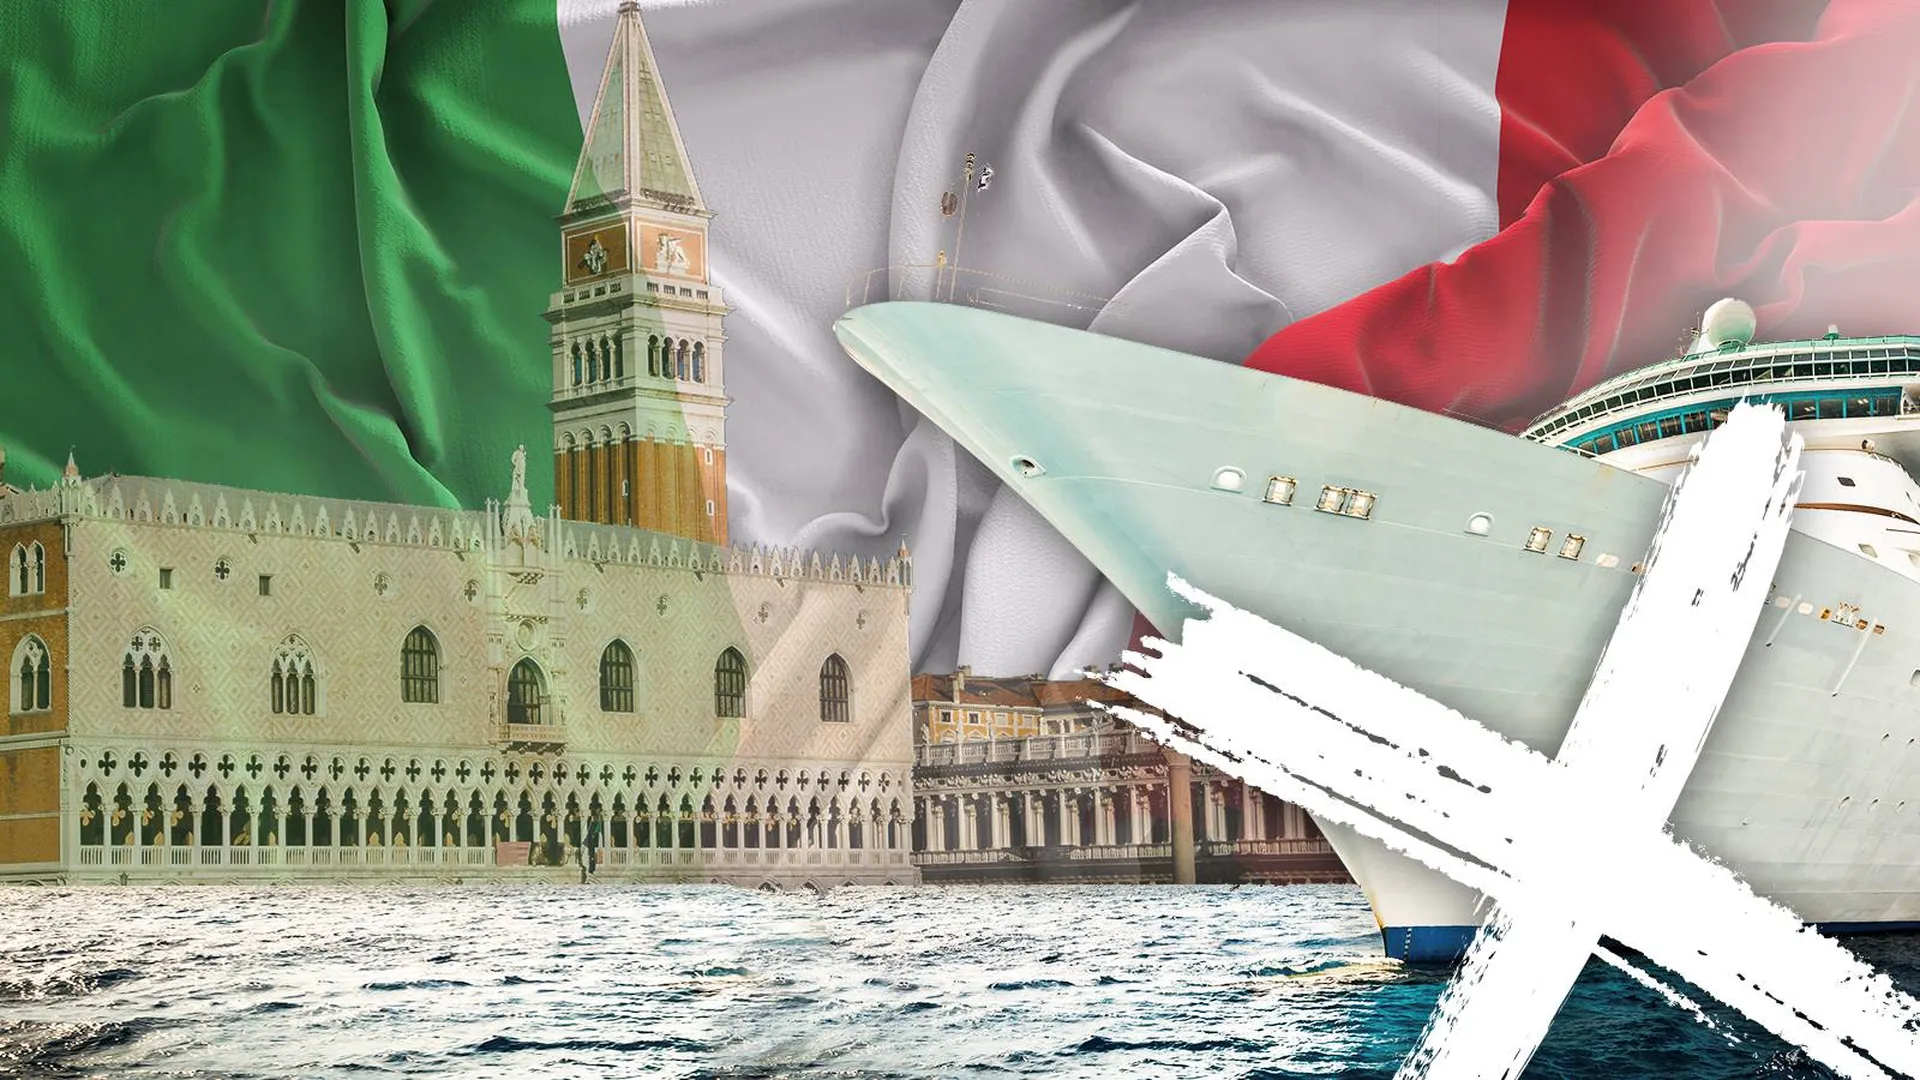 Богачам с круизных лайнеров теперь не попасть в Венецию. Кому от этого хуже — вопрос